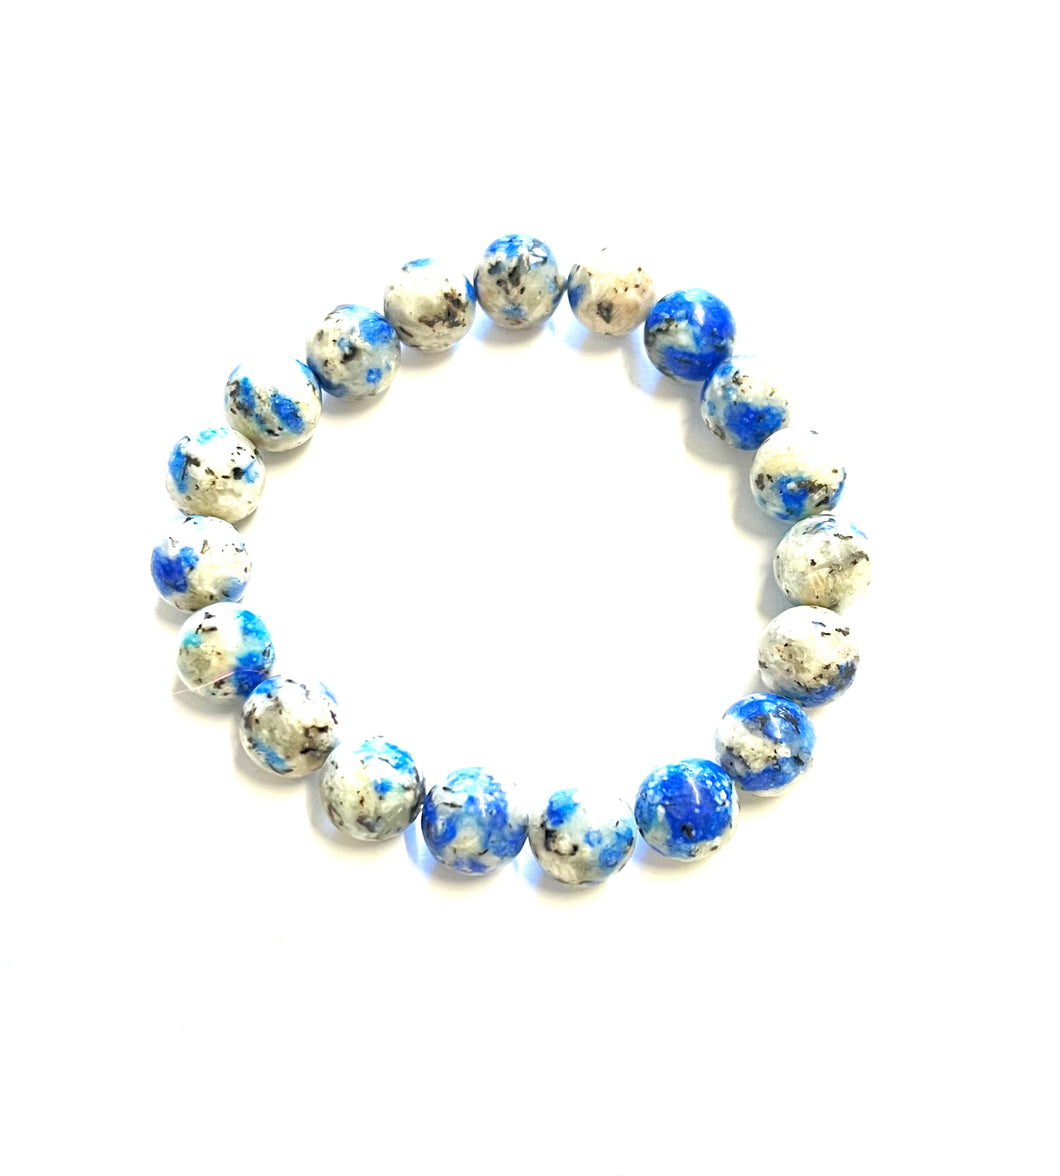 Bracelet with K2 Azurite beads